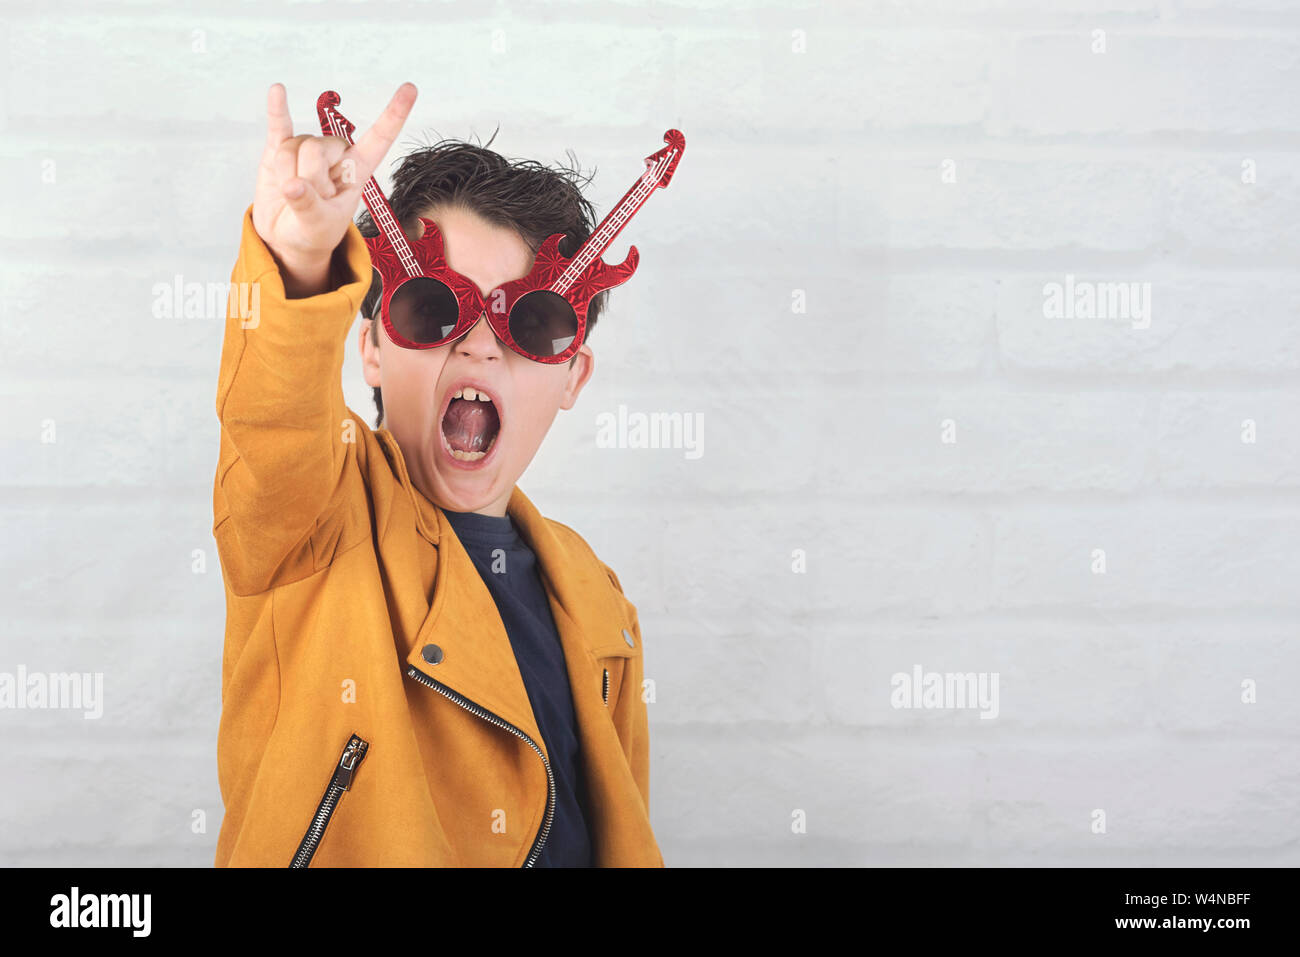 Enfant avec des lunettes faisant symbole rock avec les mains à fond brique Banque D'Images